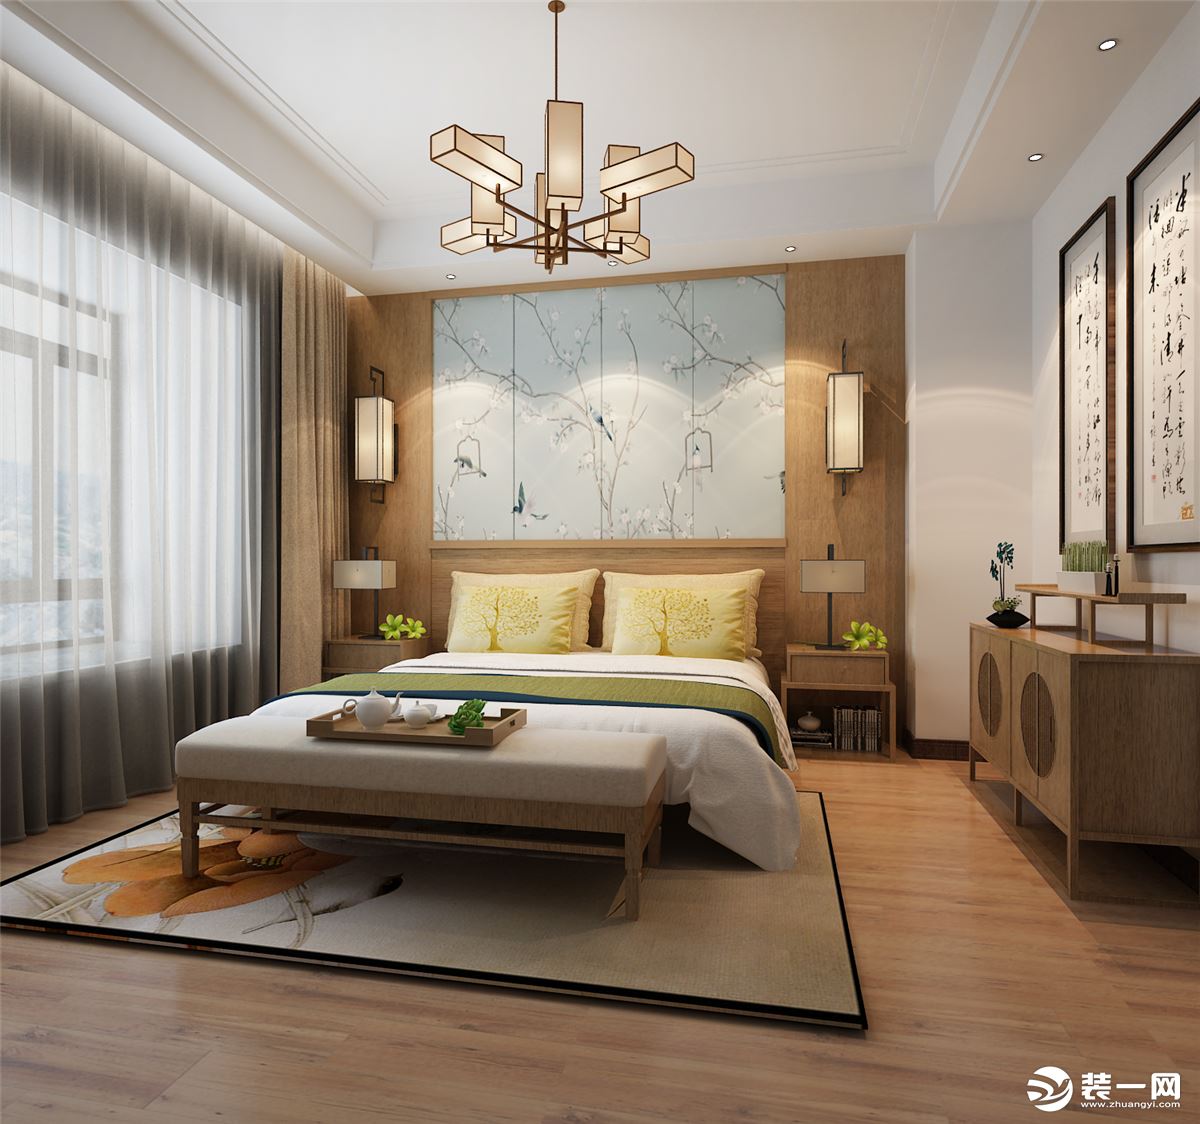 【武汉海天装饰】绿地汉口中心140平中式风格卧室